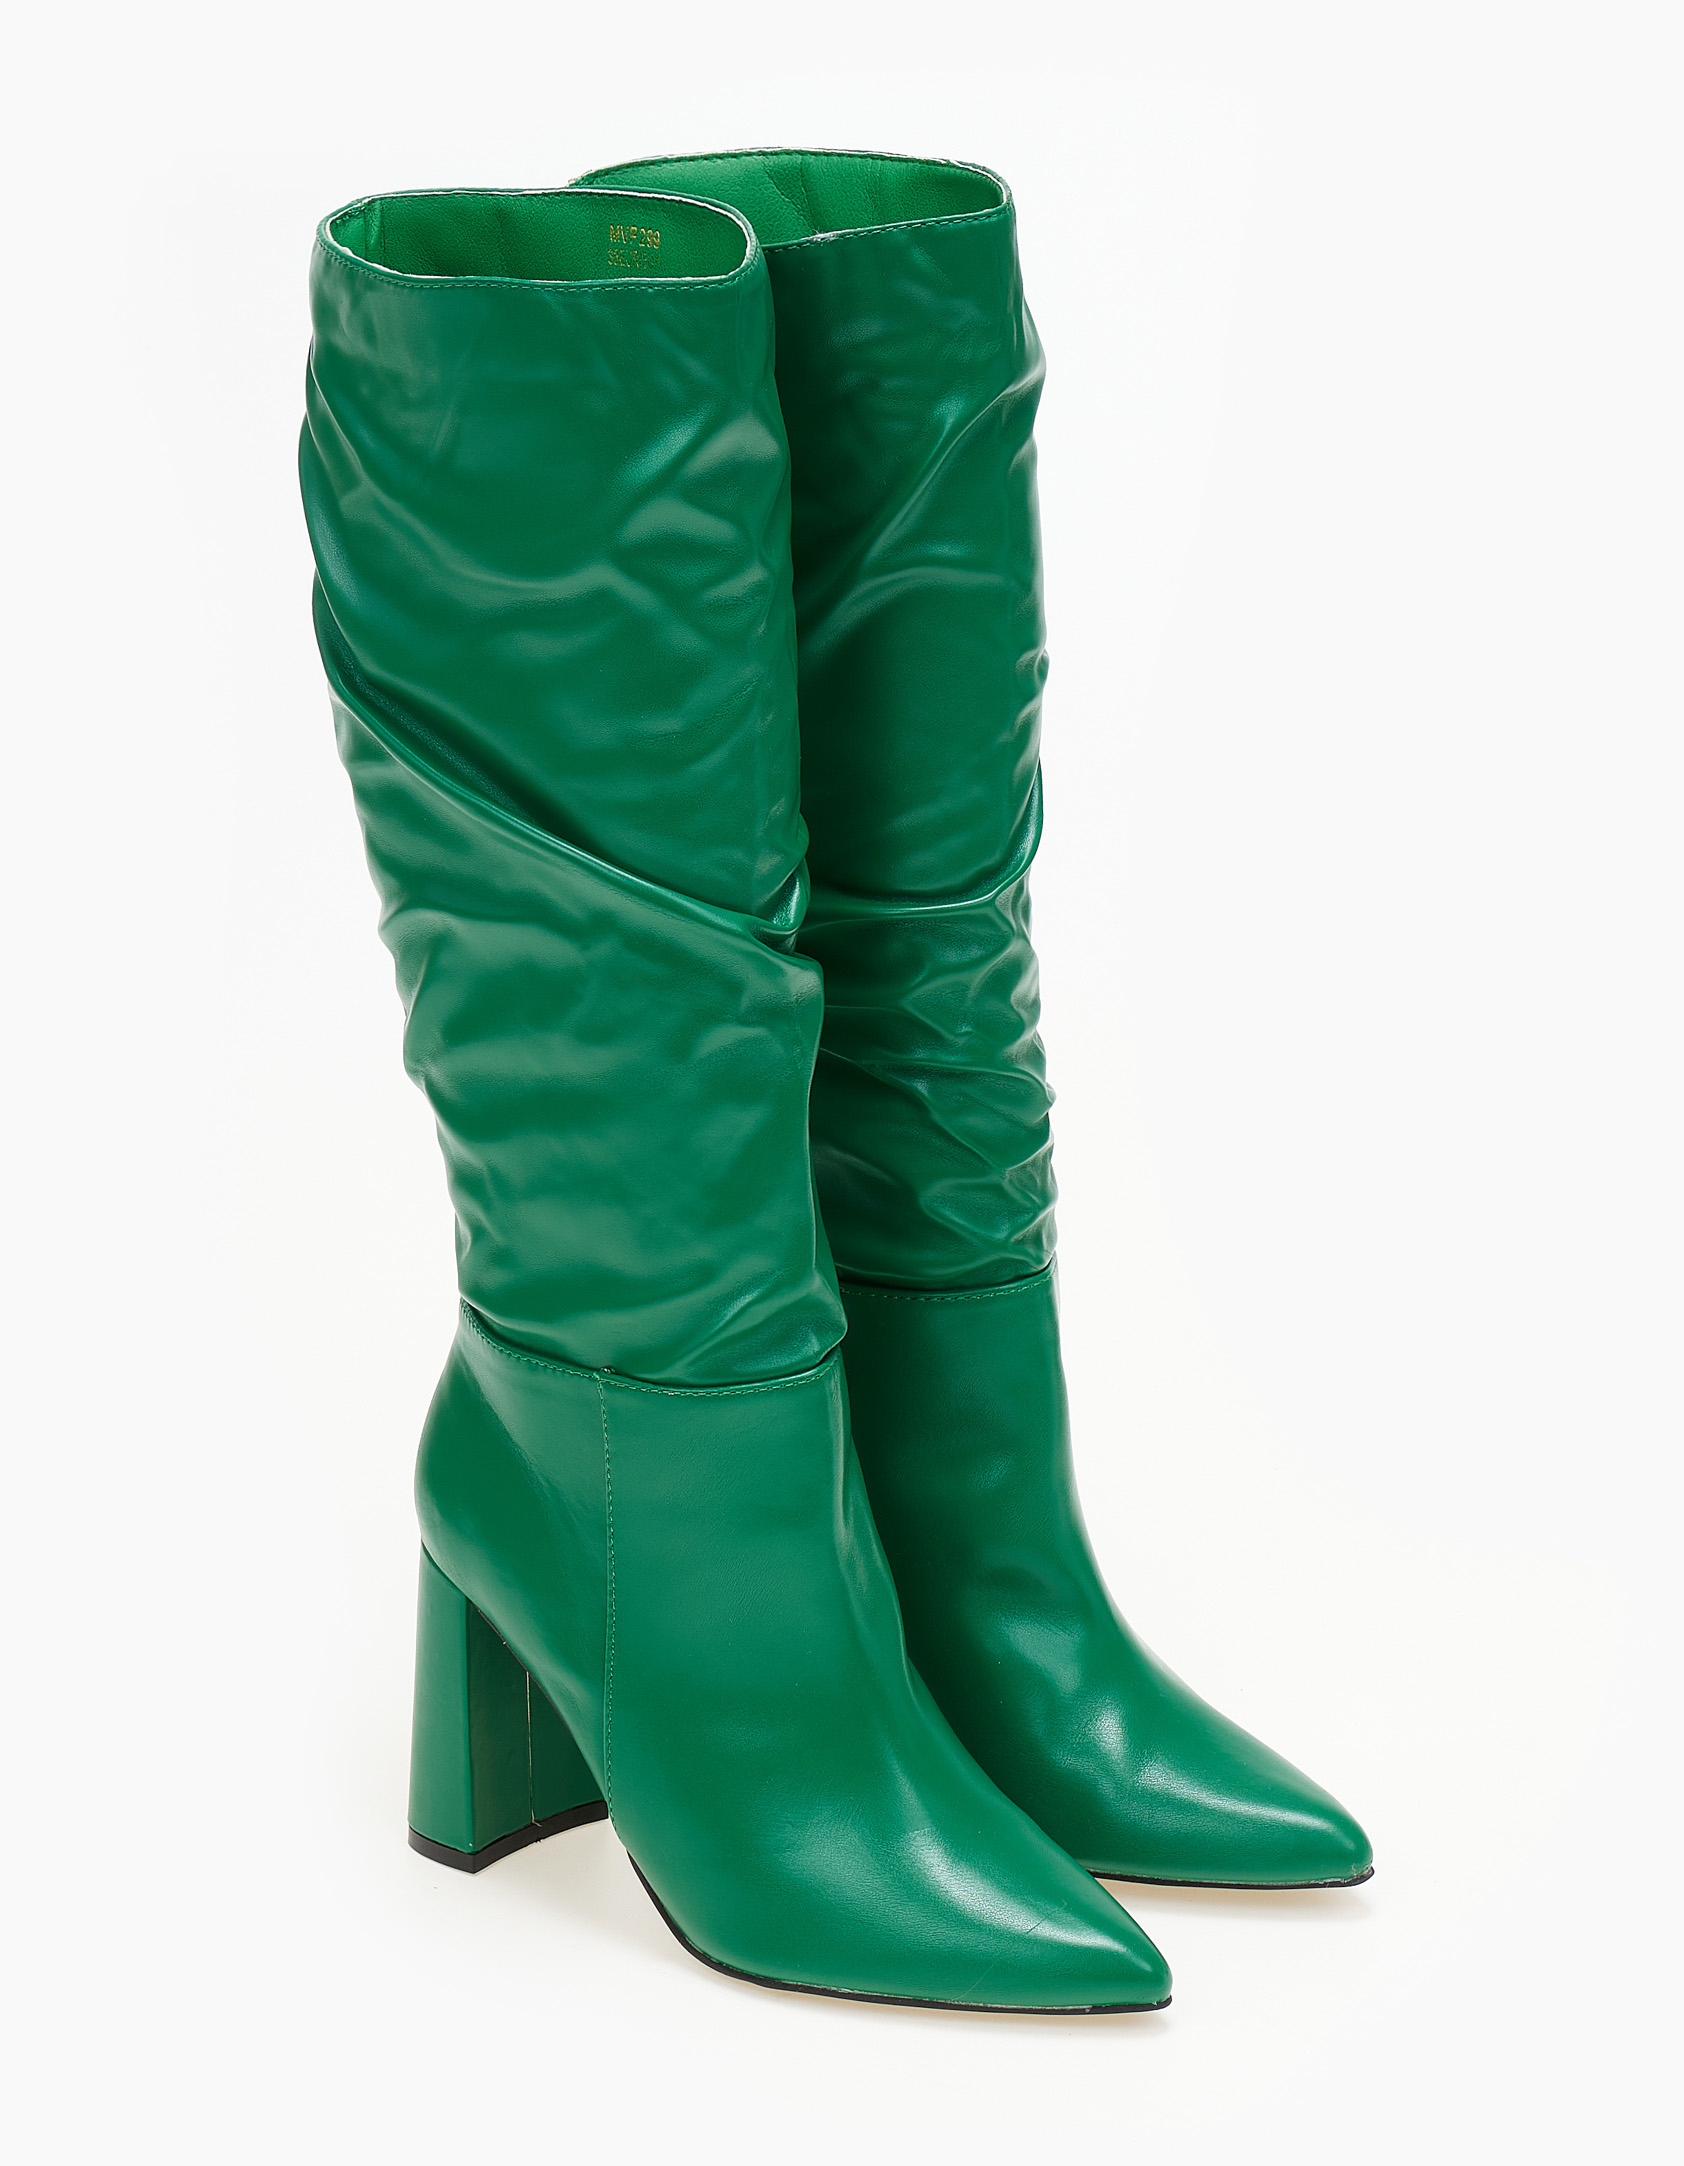 Μπότες με χοντρό τακούνι - Πράσινο Παπούτσια > Μπότες